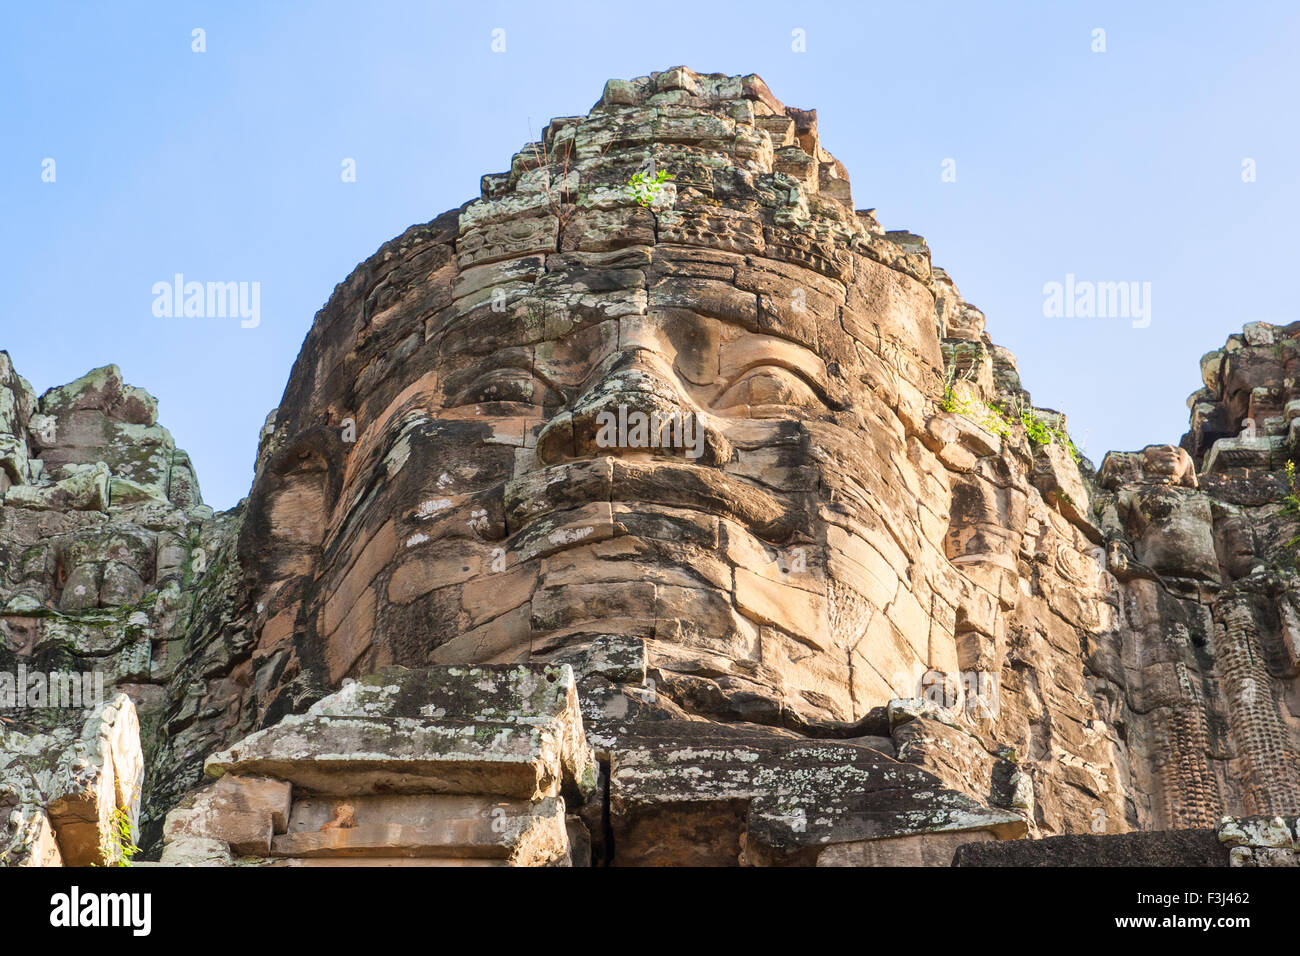 Uno de los rostros de piedra gigante en el templo Bayon en Angkor Wat, Camboya Foto de stock